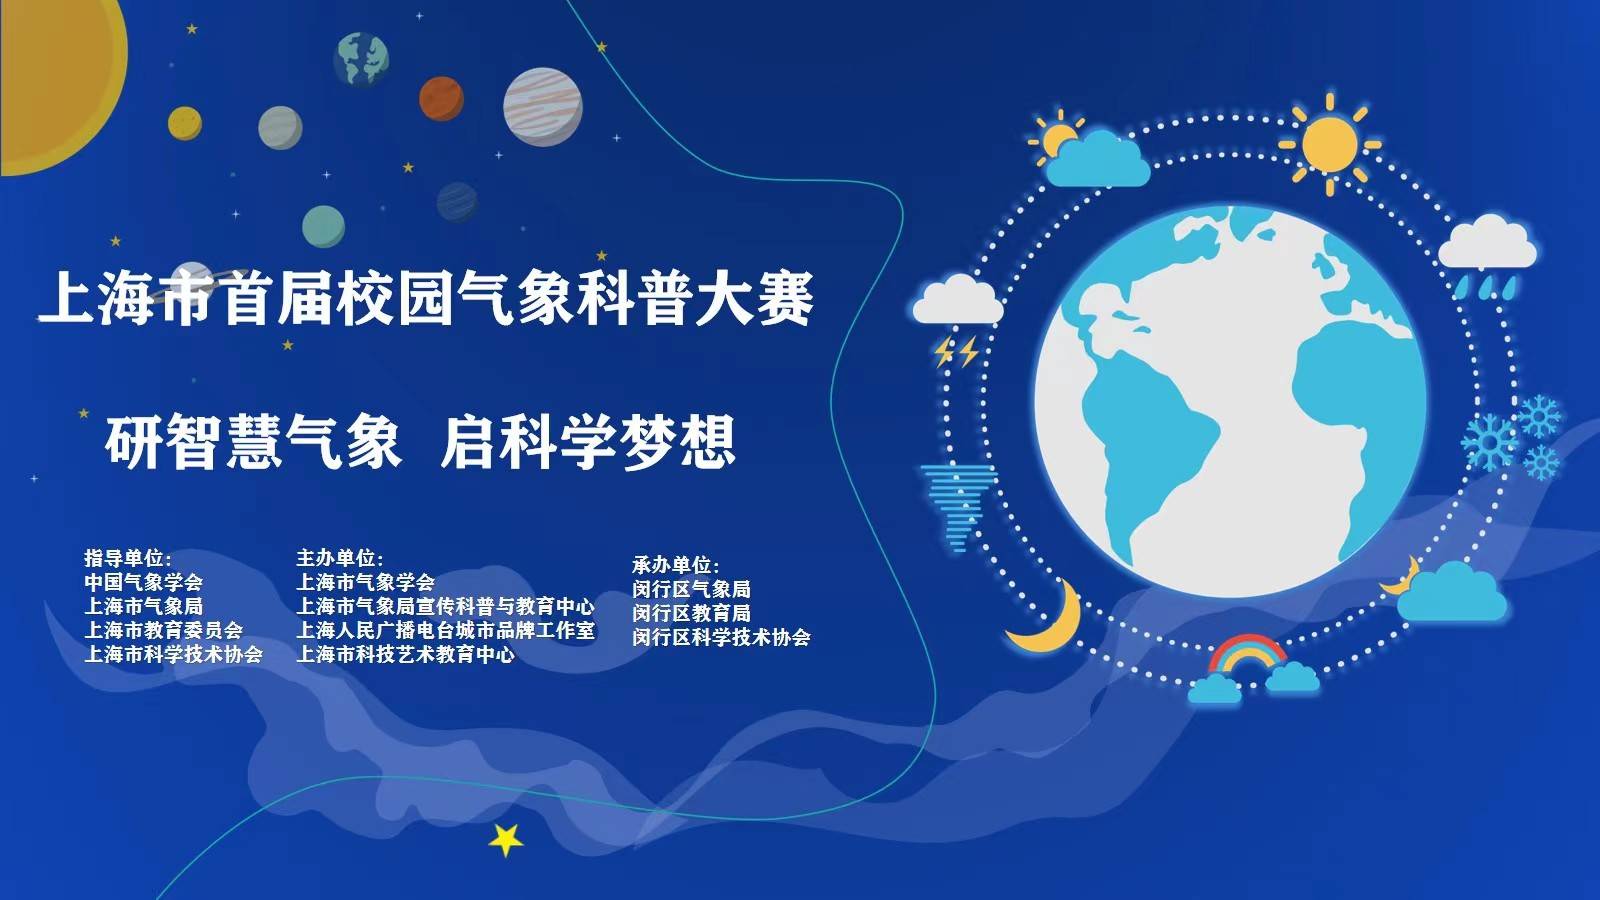 上海市首届校园气象科普大赛于3月18日在线启动 上海市气象局 供图